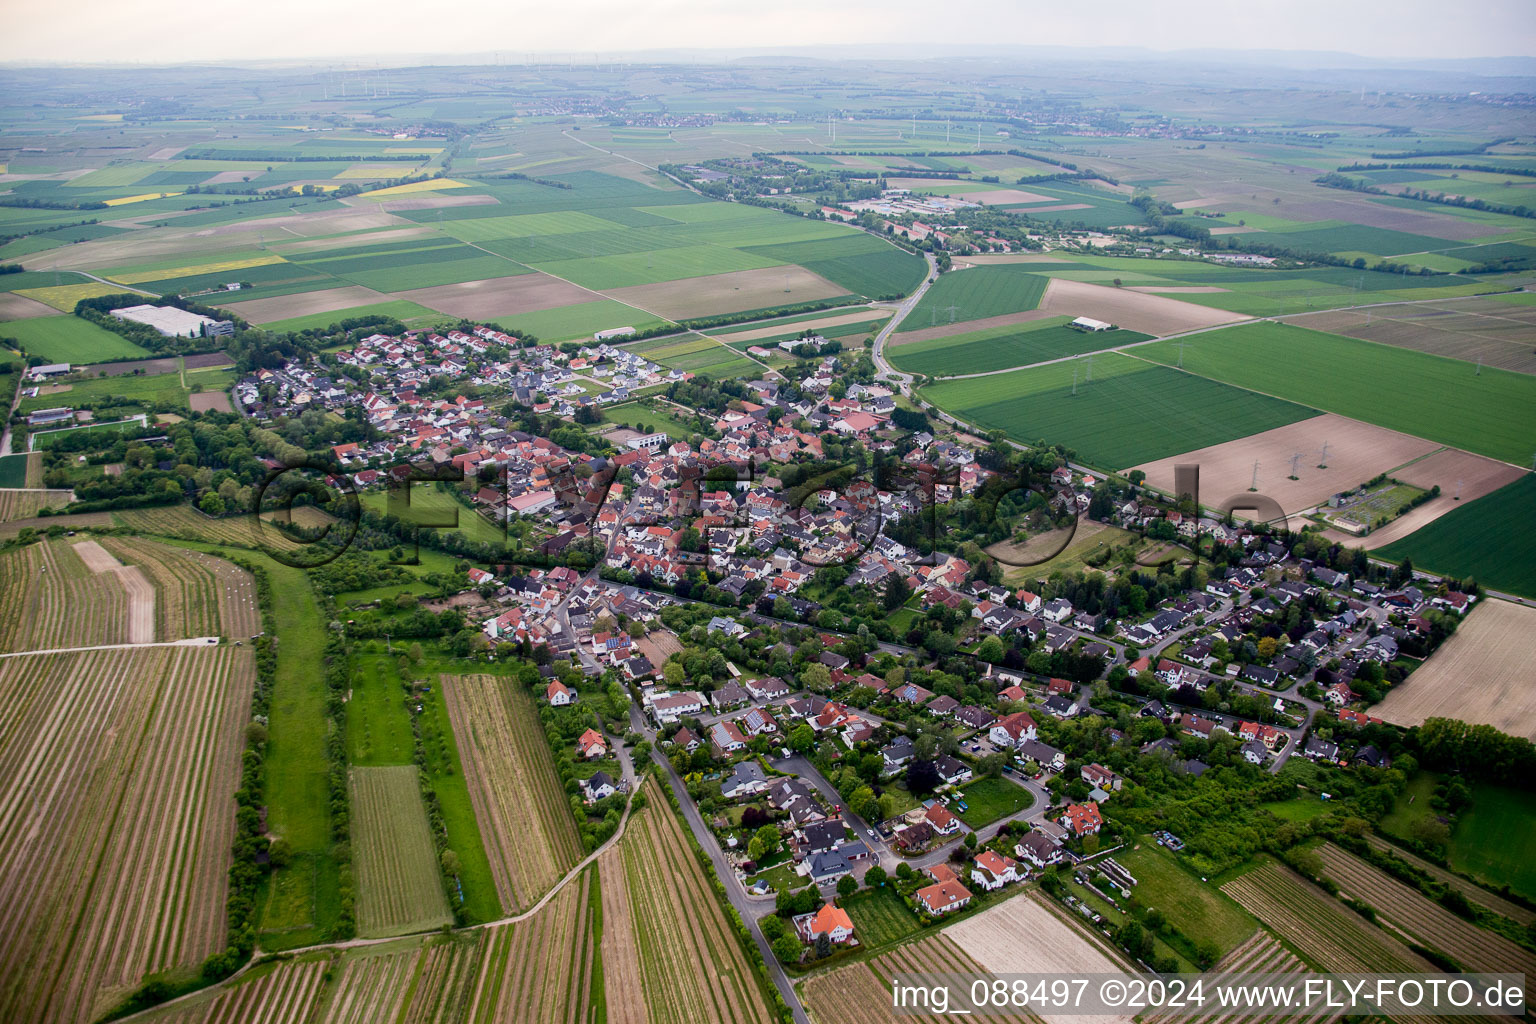 Village view in Dexheim in the state Rhineland-Palatinate